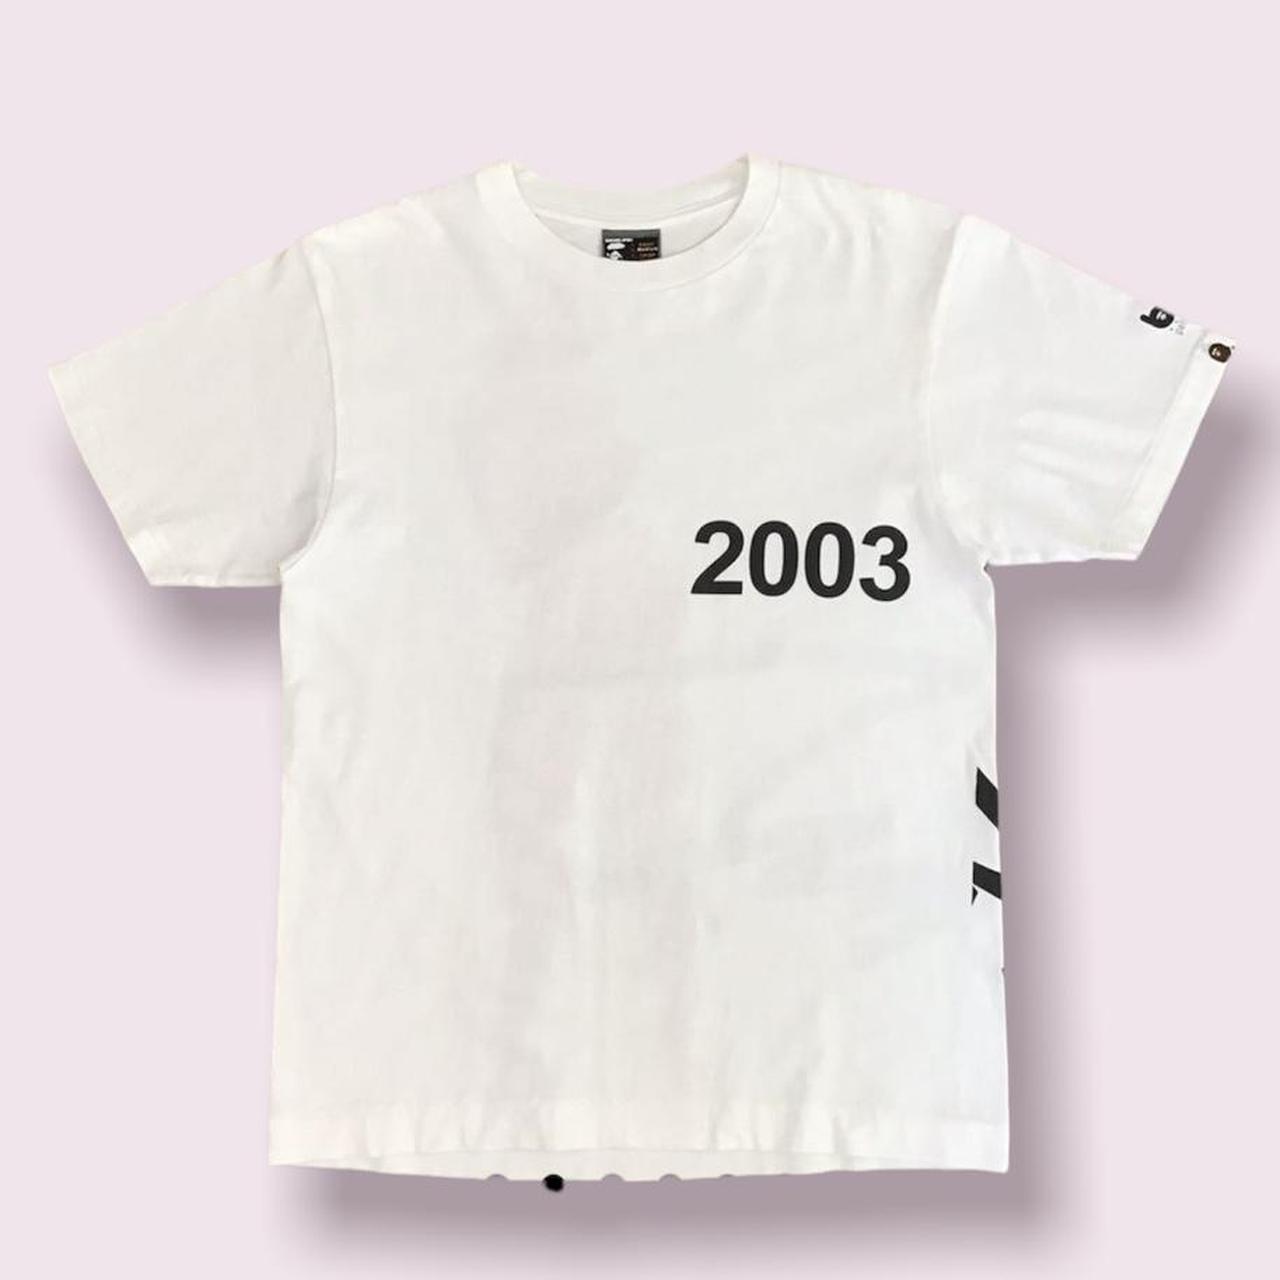 Bape X Futura 2003 Bape Gallery T-Shirt Super Rare... - Depop